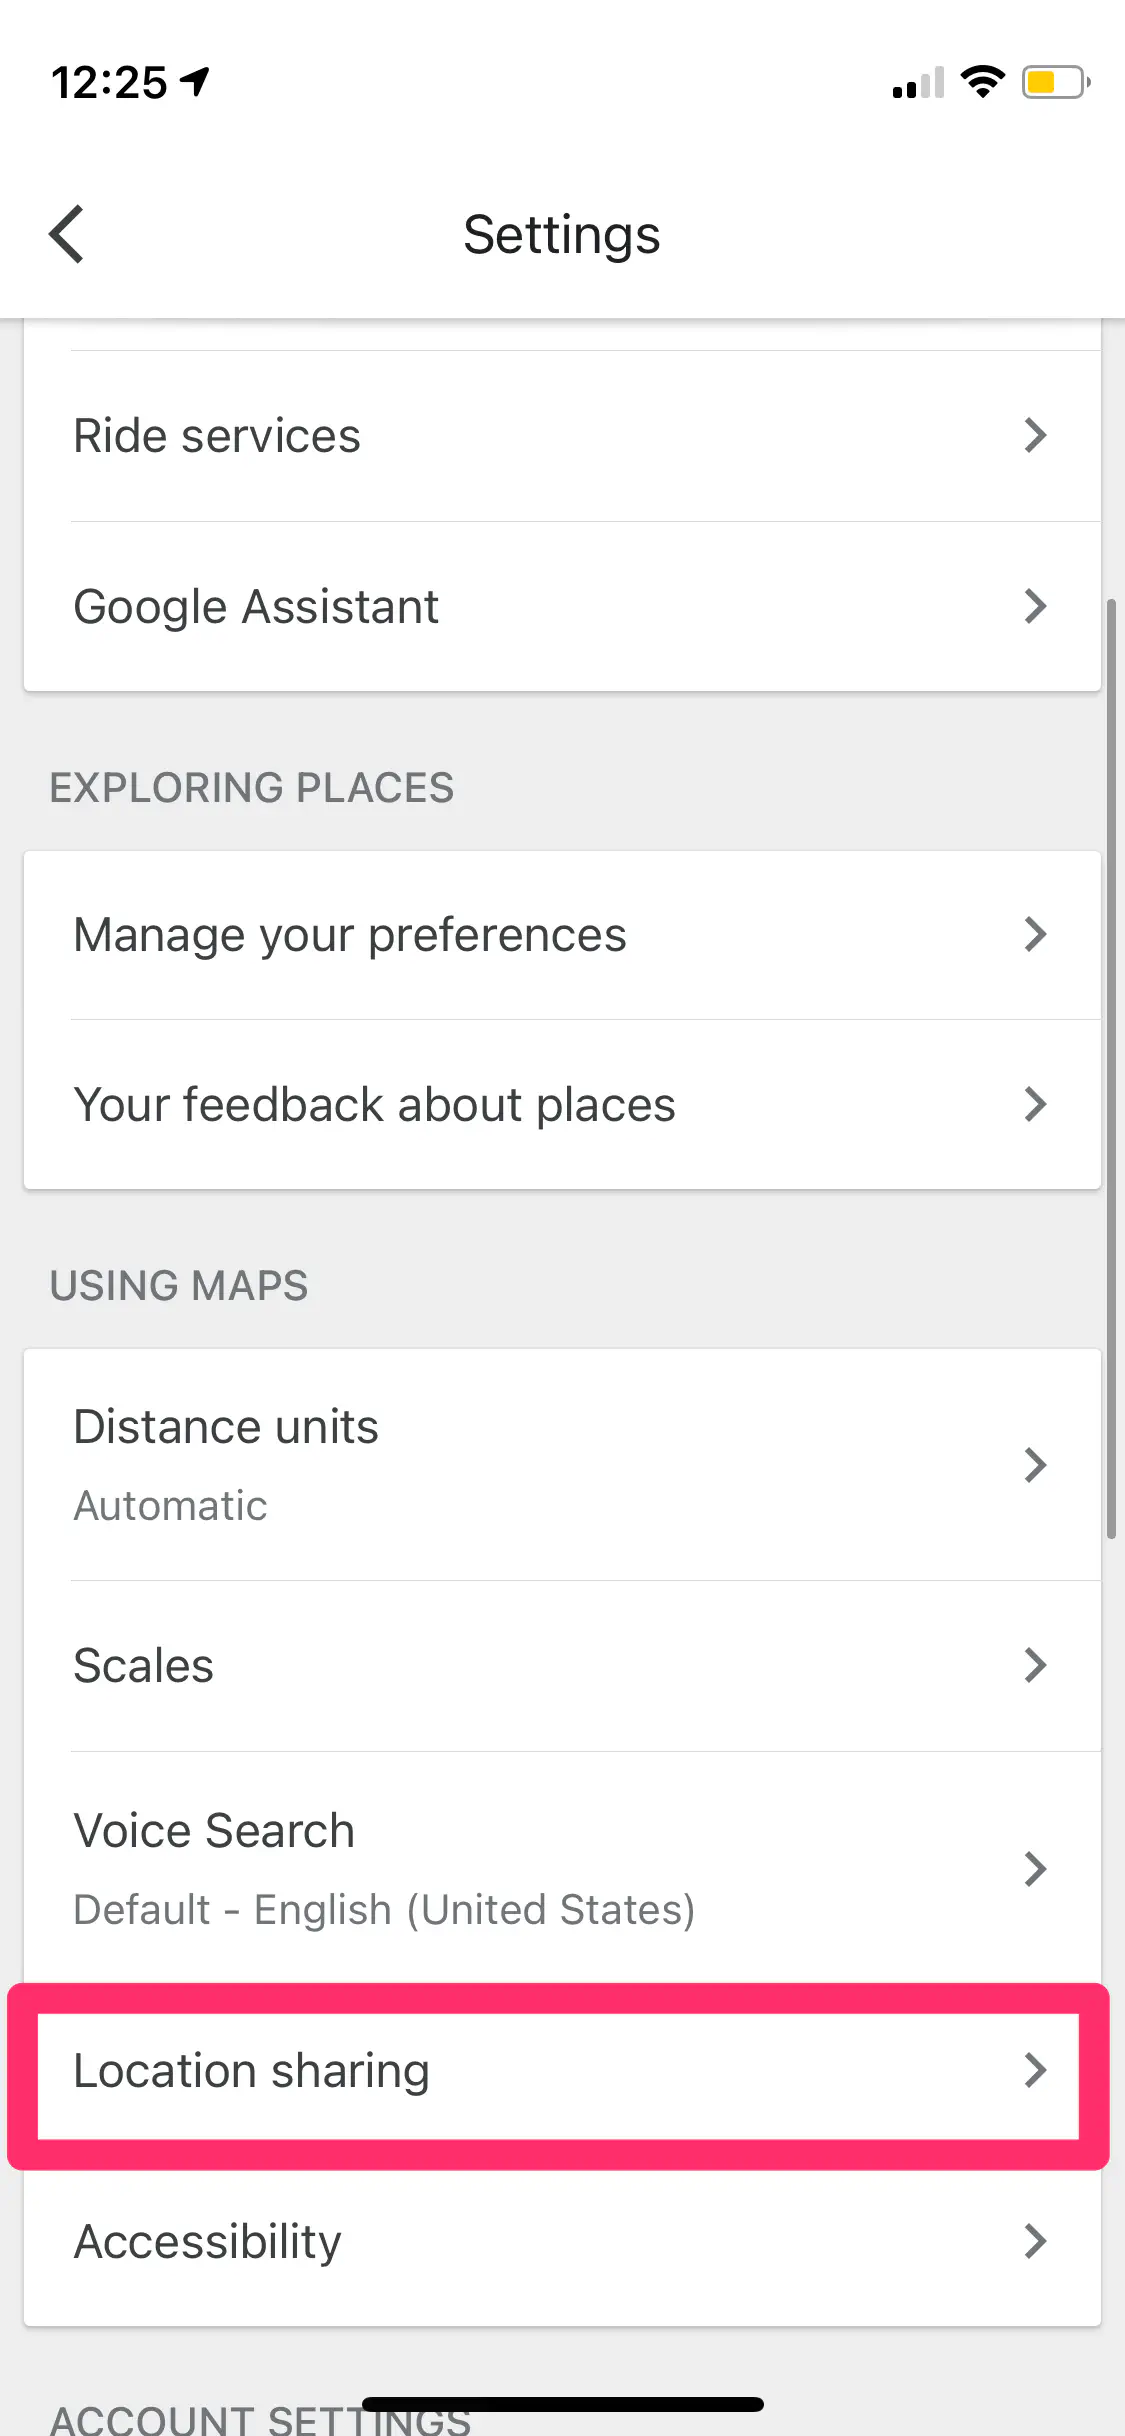 Как подделать или исказить свое местоположение в Google Maps